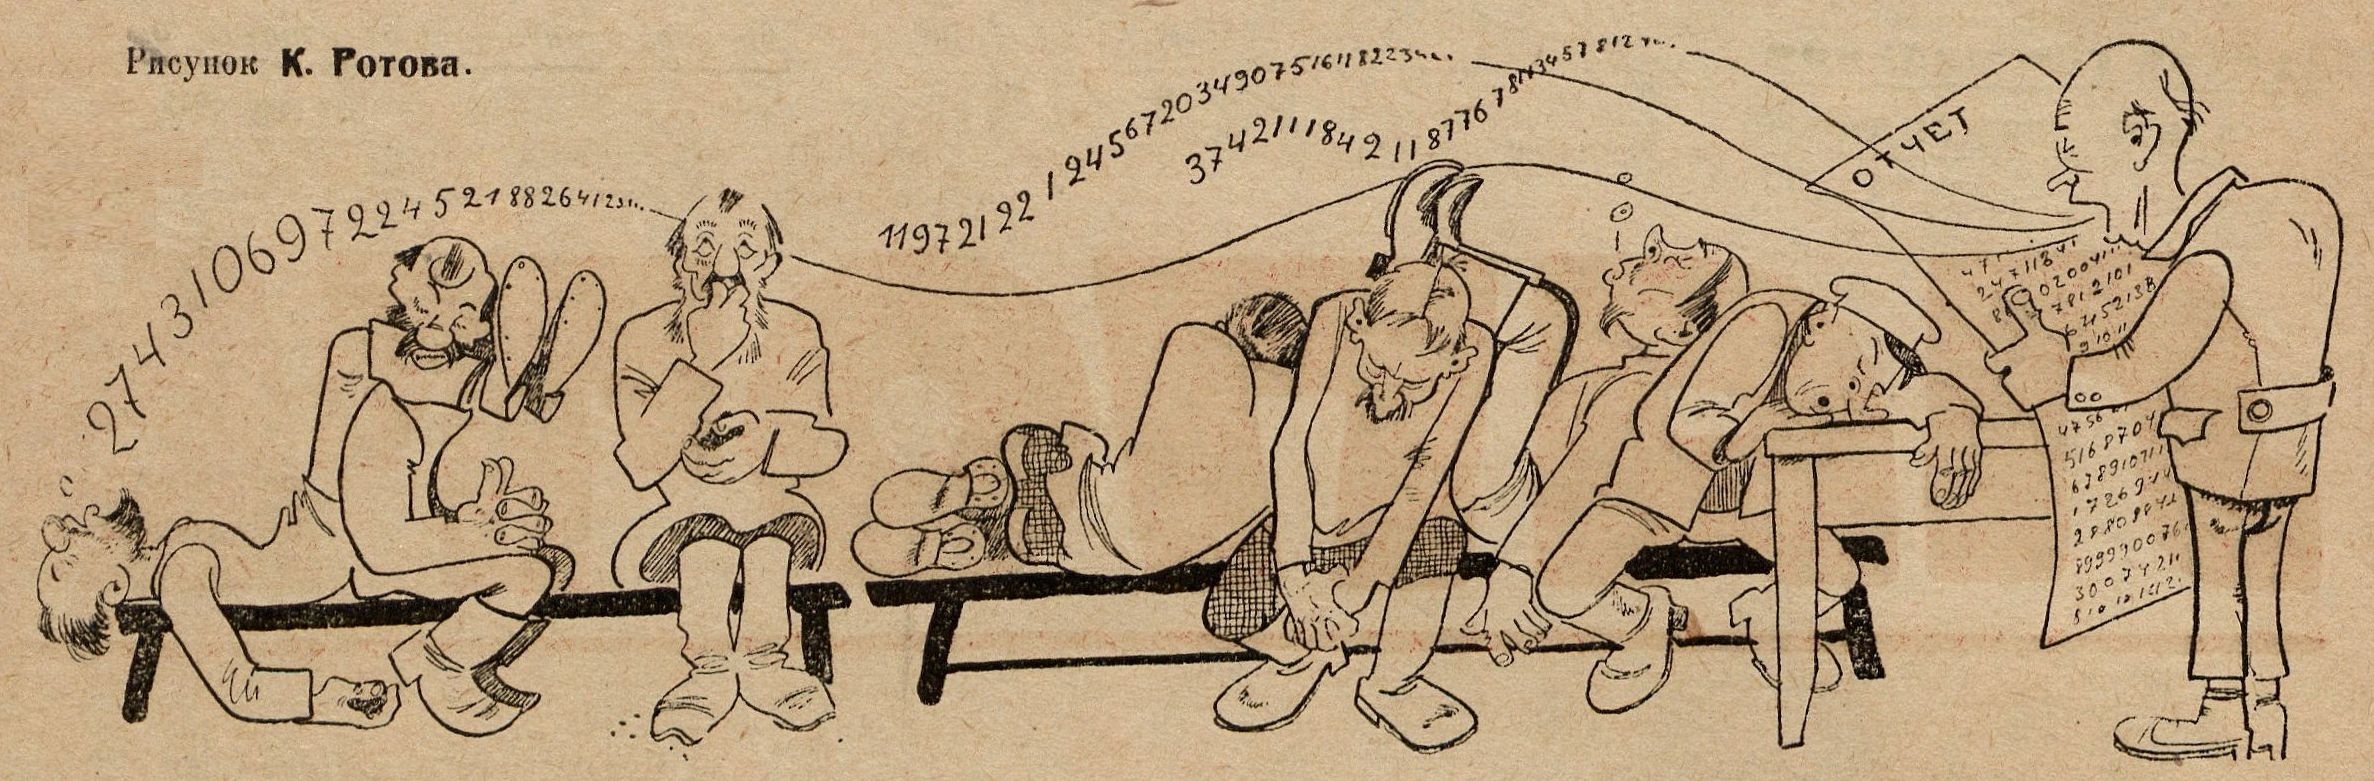 Иллюстрации к рассказу Бунина лапти